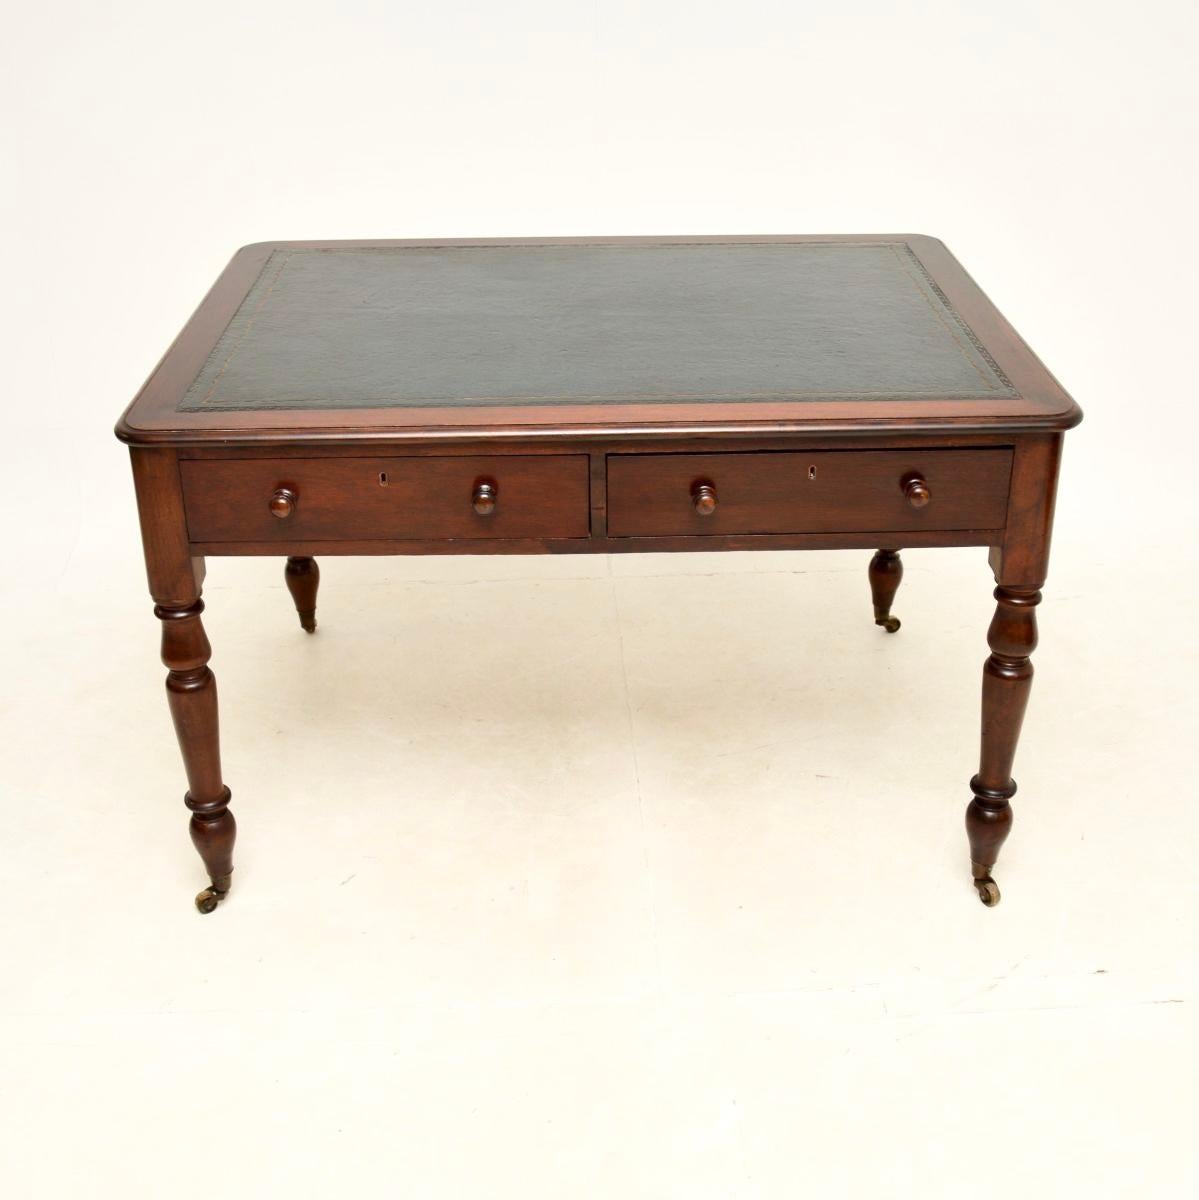 Superbe bureau / table à écrire victorien antique avec dessus en cuir. Fabriqué en Angleterre, il date de la période 1860-1880.

Il est d'une grande qualité et d'une taille impressionnante avec beaucoup d'espace de travail. Le plateau est en cuir